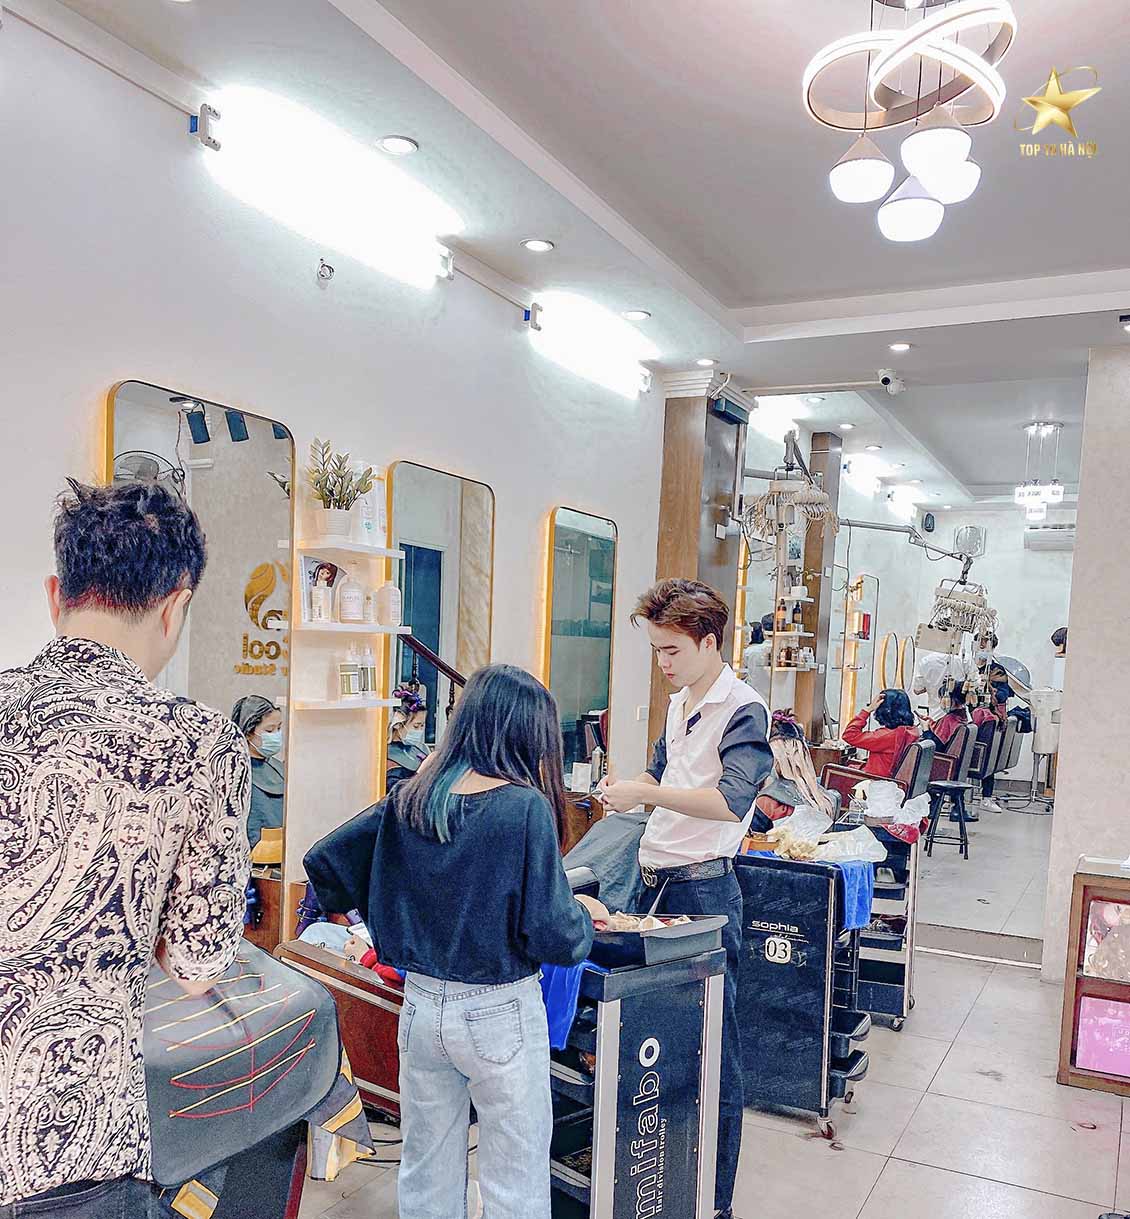 Top 10 Salon tóc đẹp và chuyên nghiệp nhất tại Hà Nội – Top 10 Hà Nội